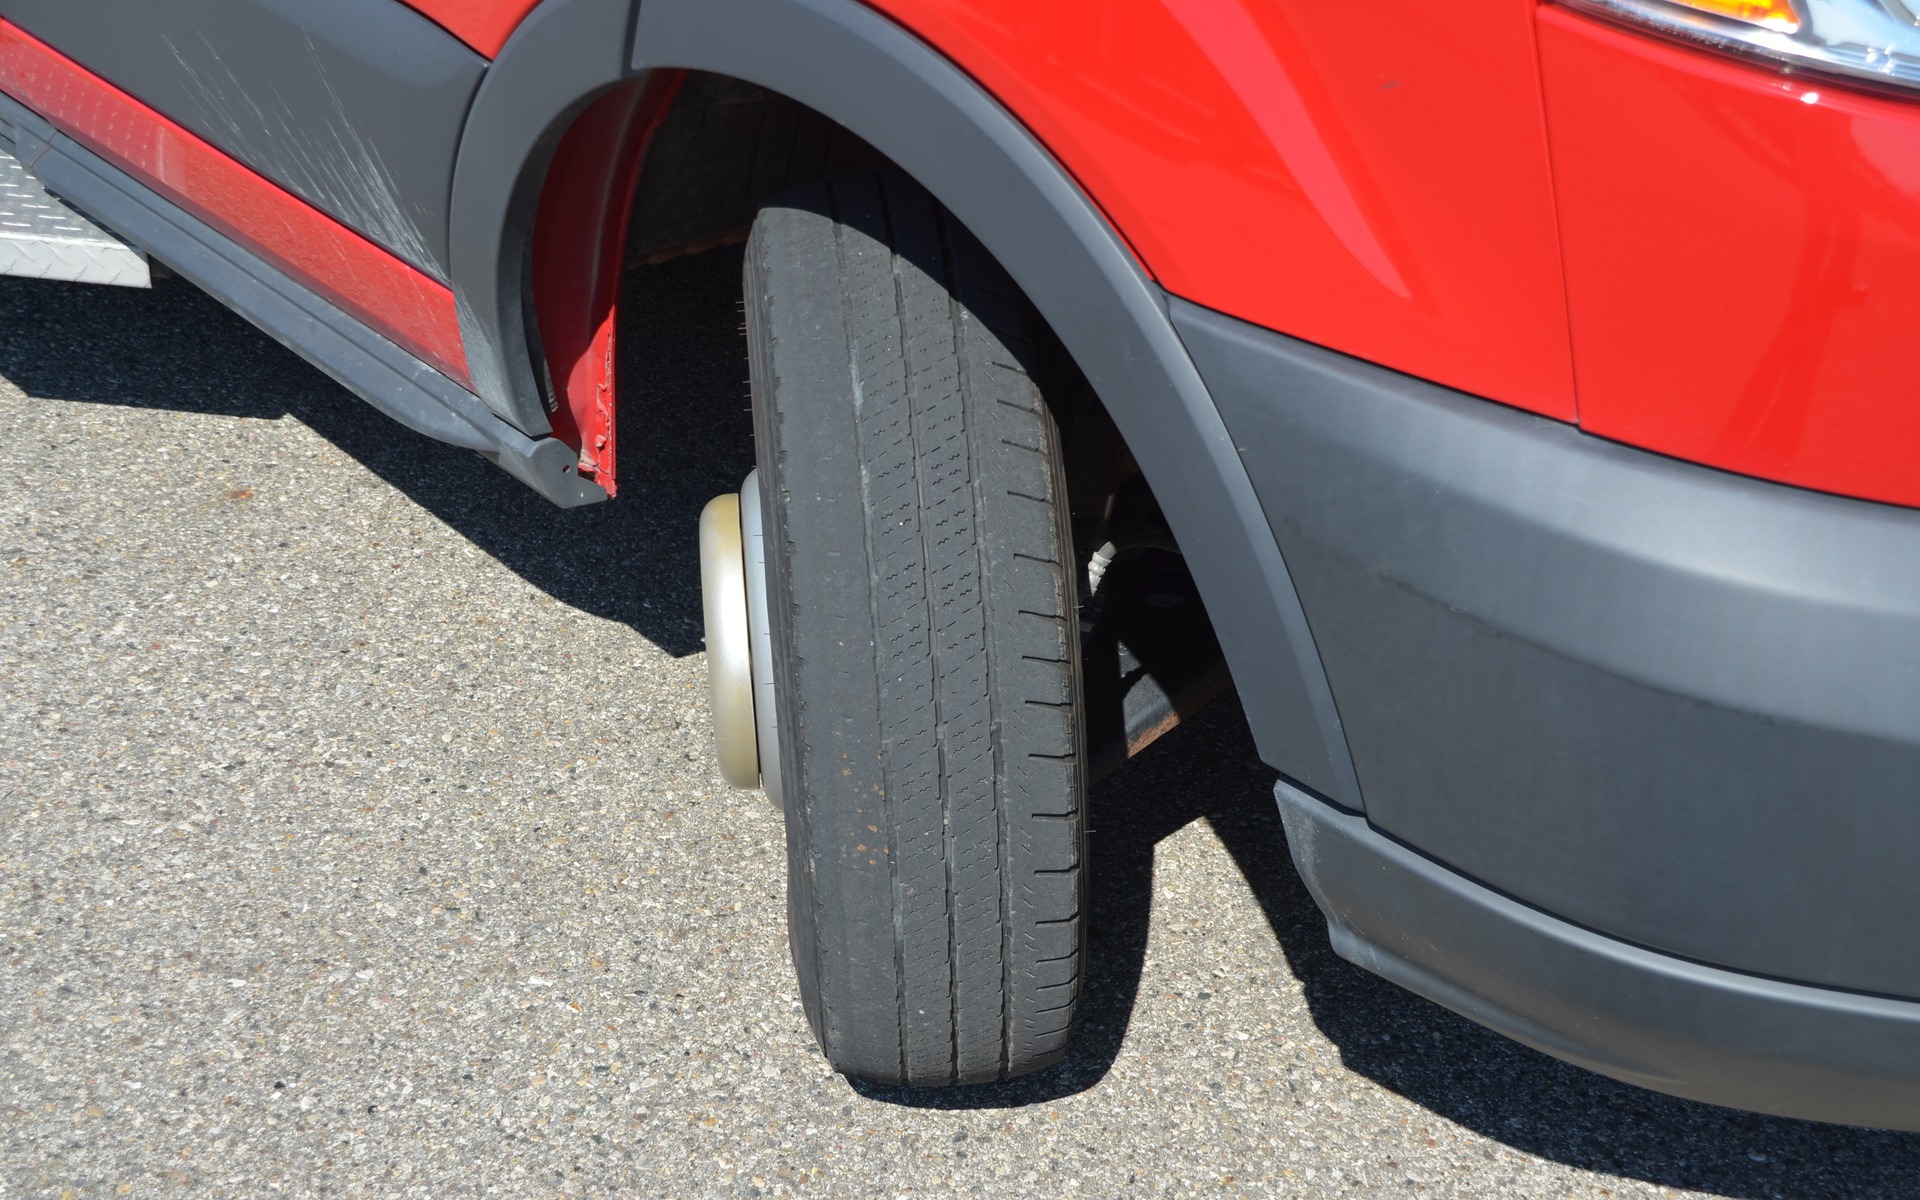 Comment savoir si mes pneus sont usés ?